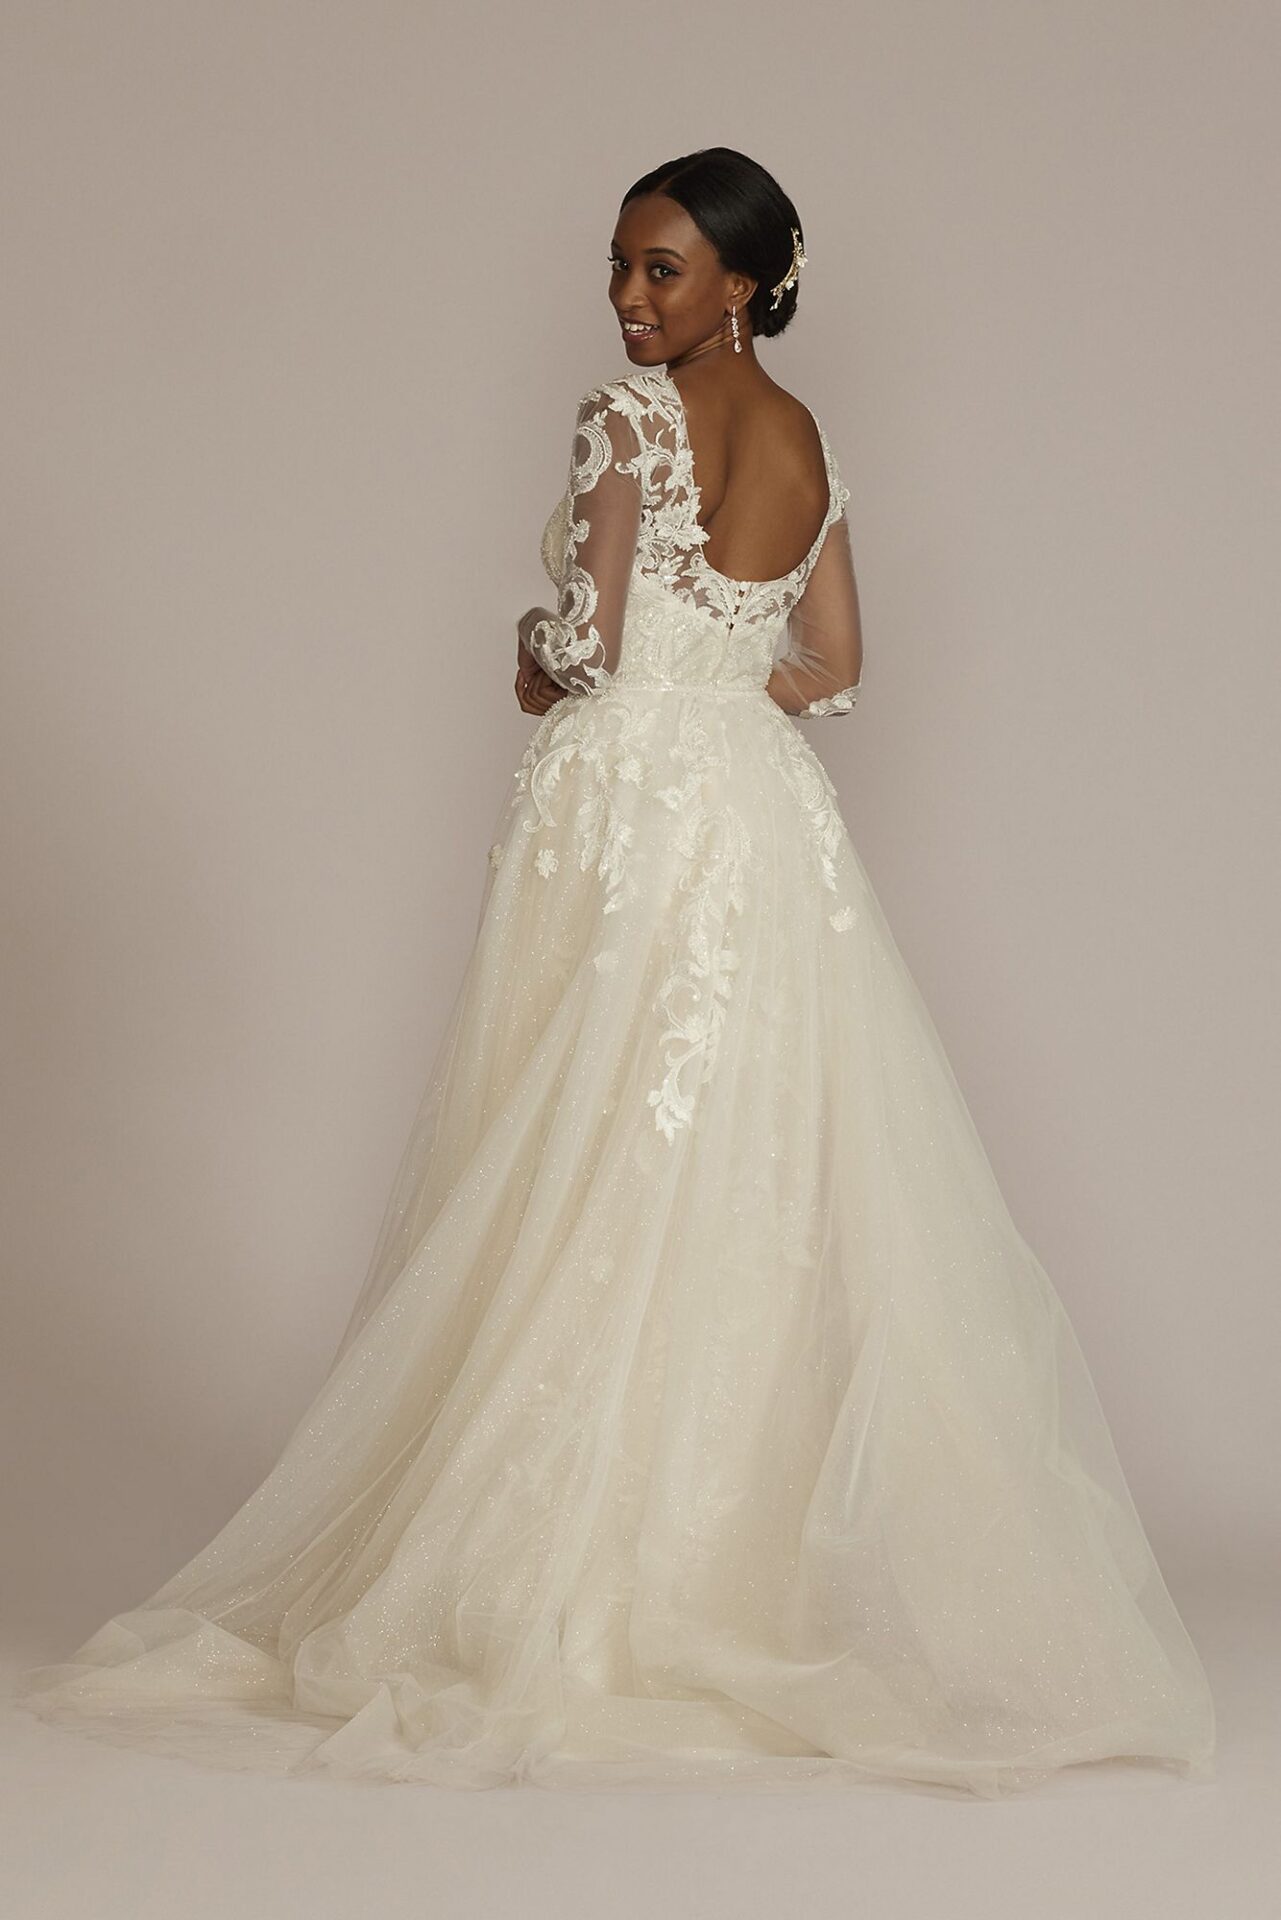 Beaded Sheath Wedding Dress with Overskirt STYLE# CWG933 - Onedaybride